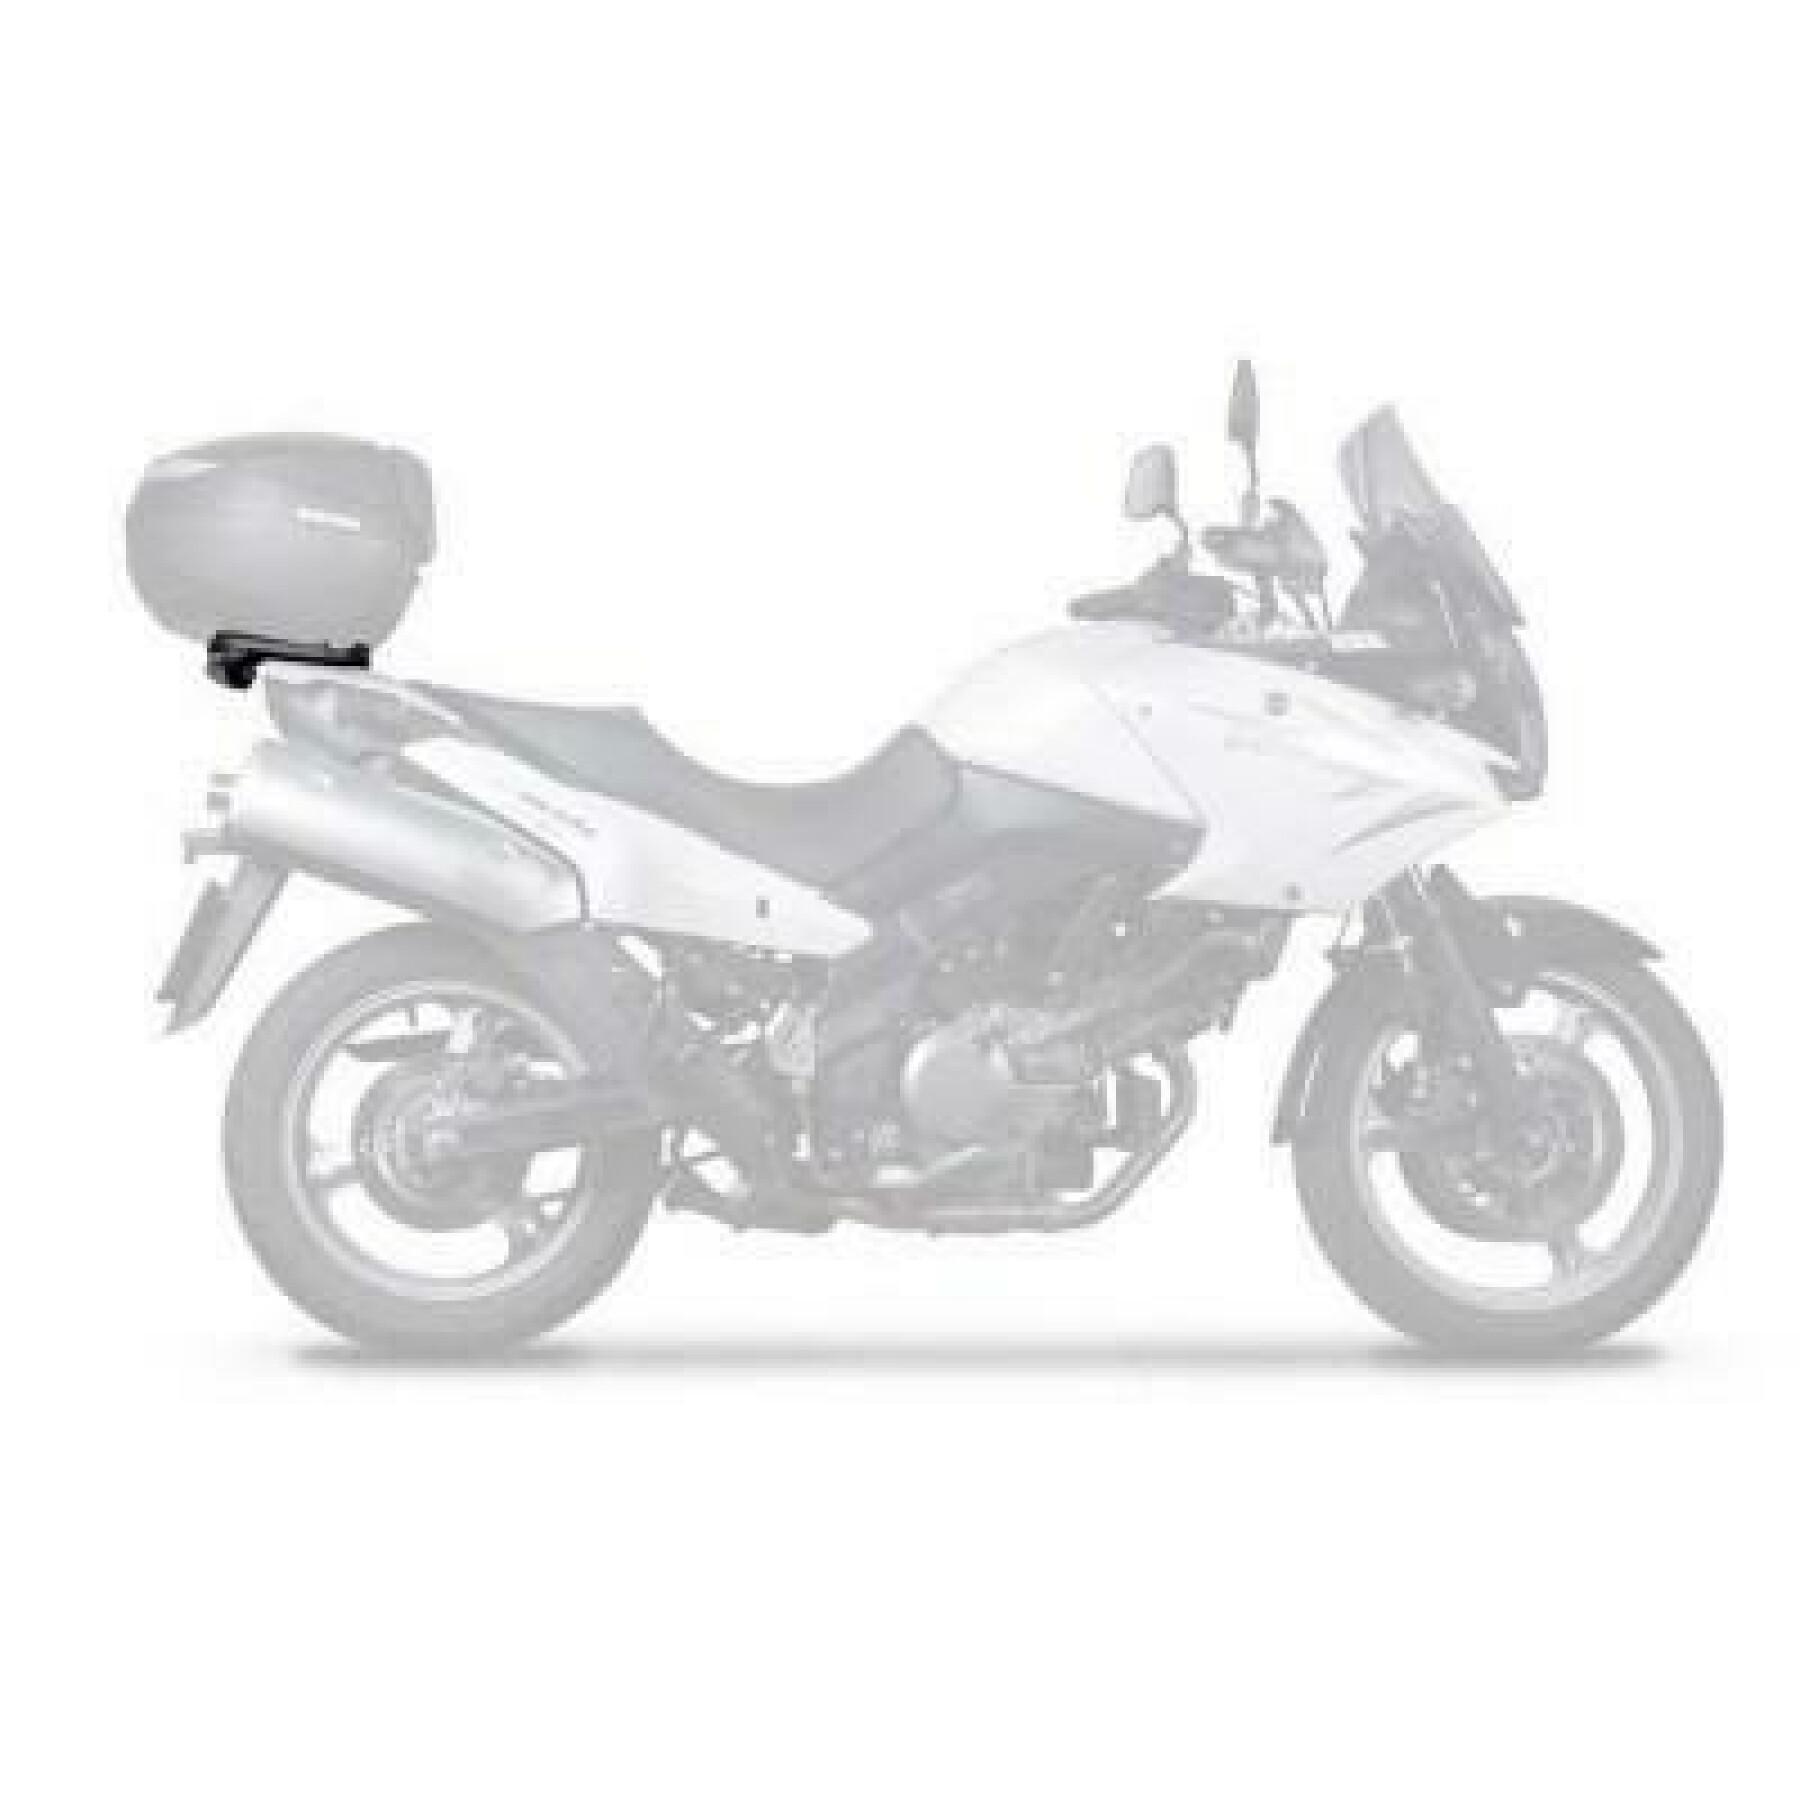 Motorcycle top case support Shad Kawasaki KLV 1000 (05 to 07)